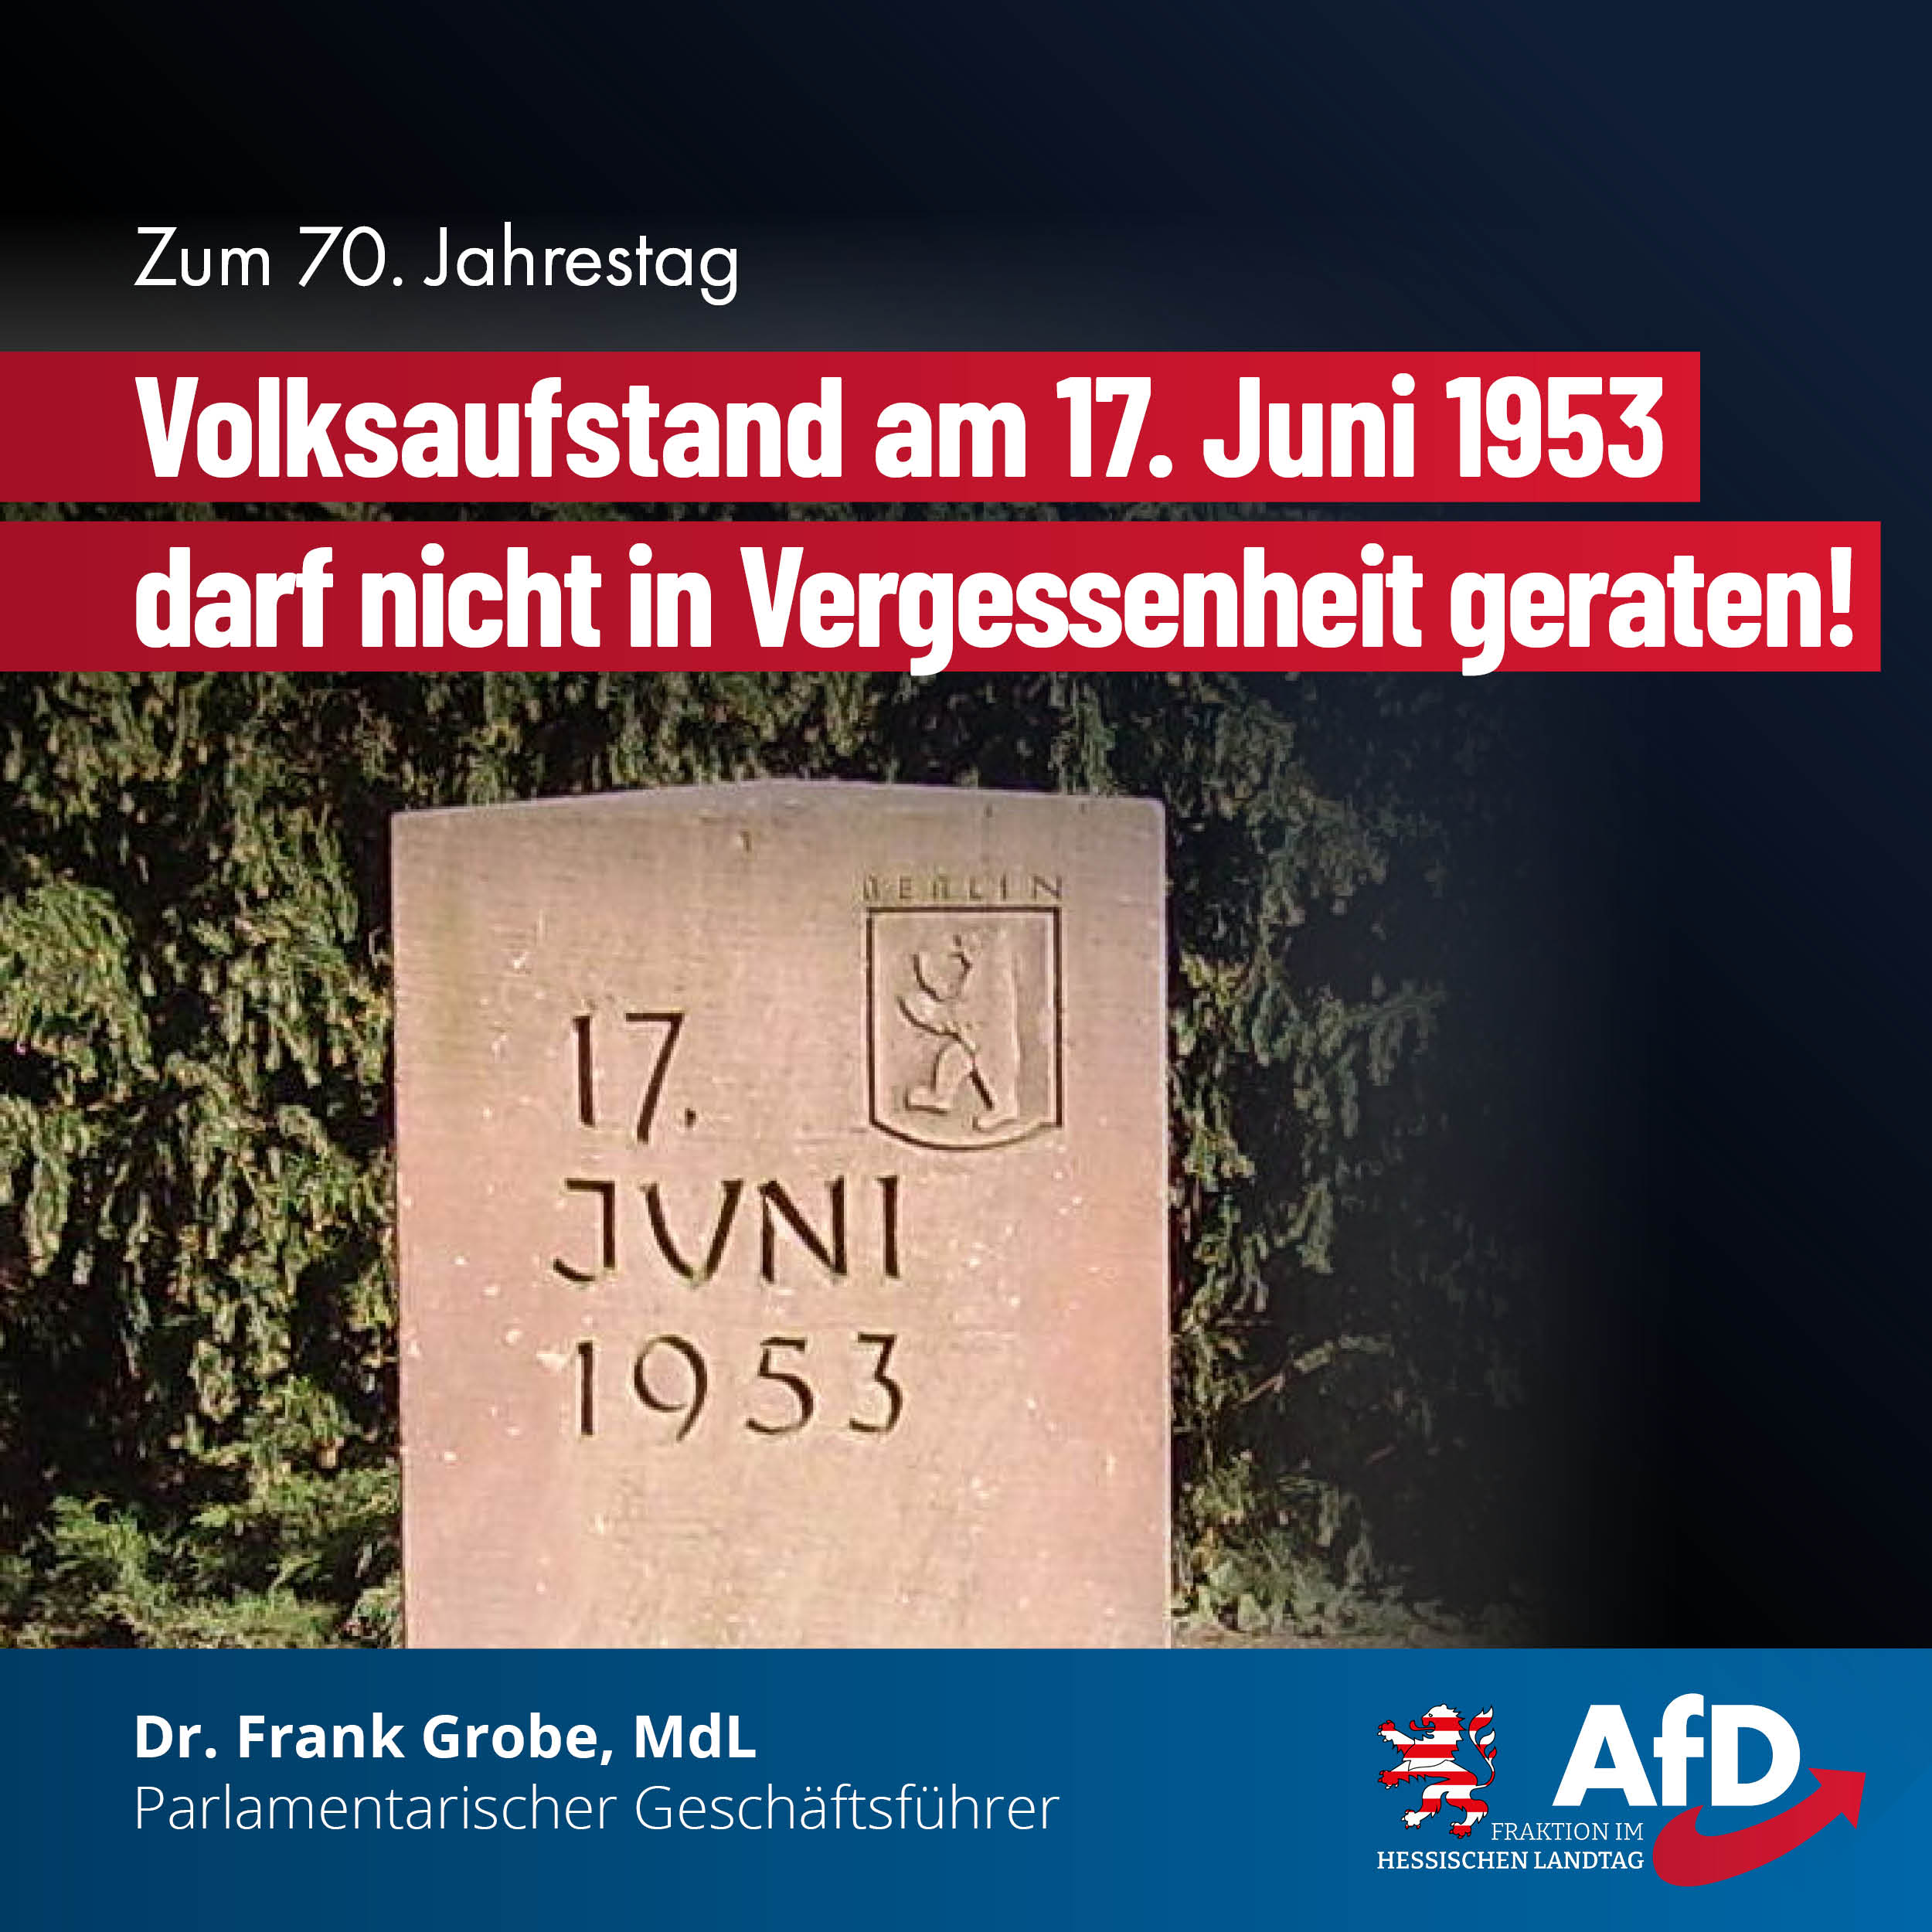 You are currently viewing Volksaufstand am 17. Juni 1953 darf nicht in Vergessenheit geraten